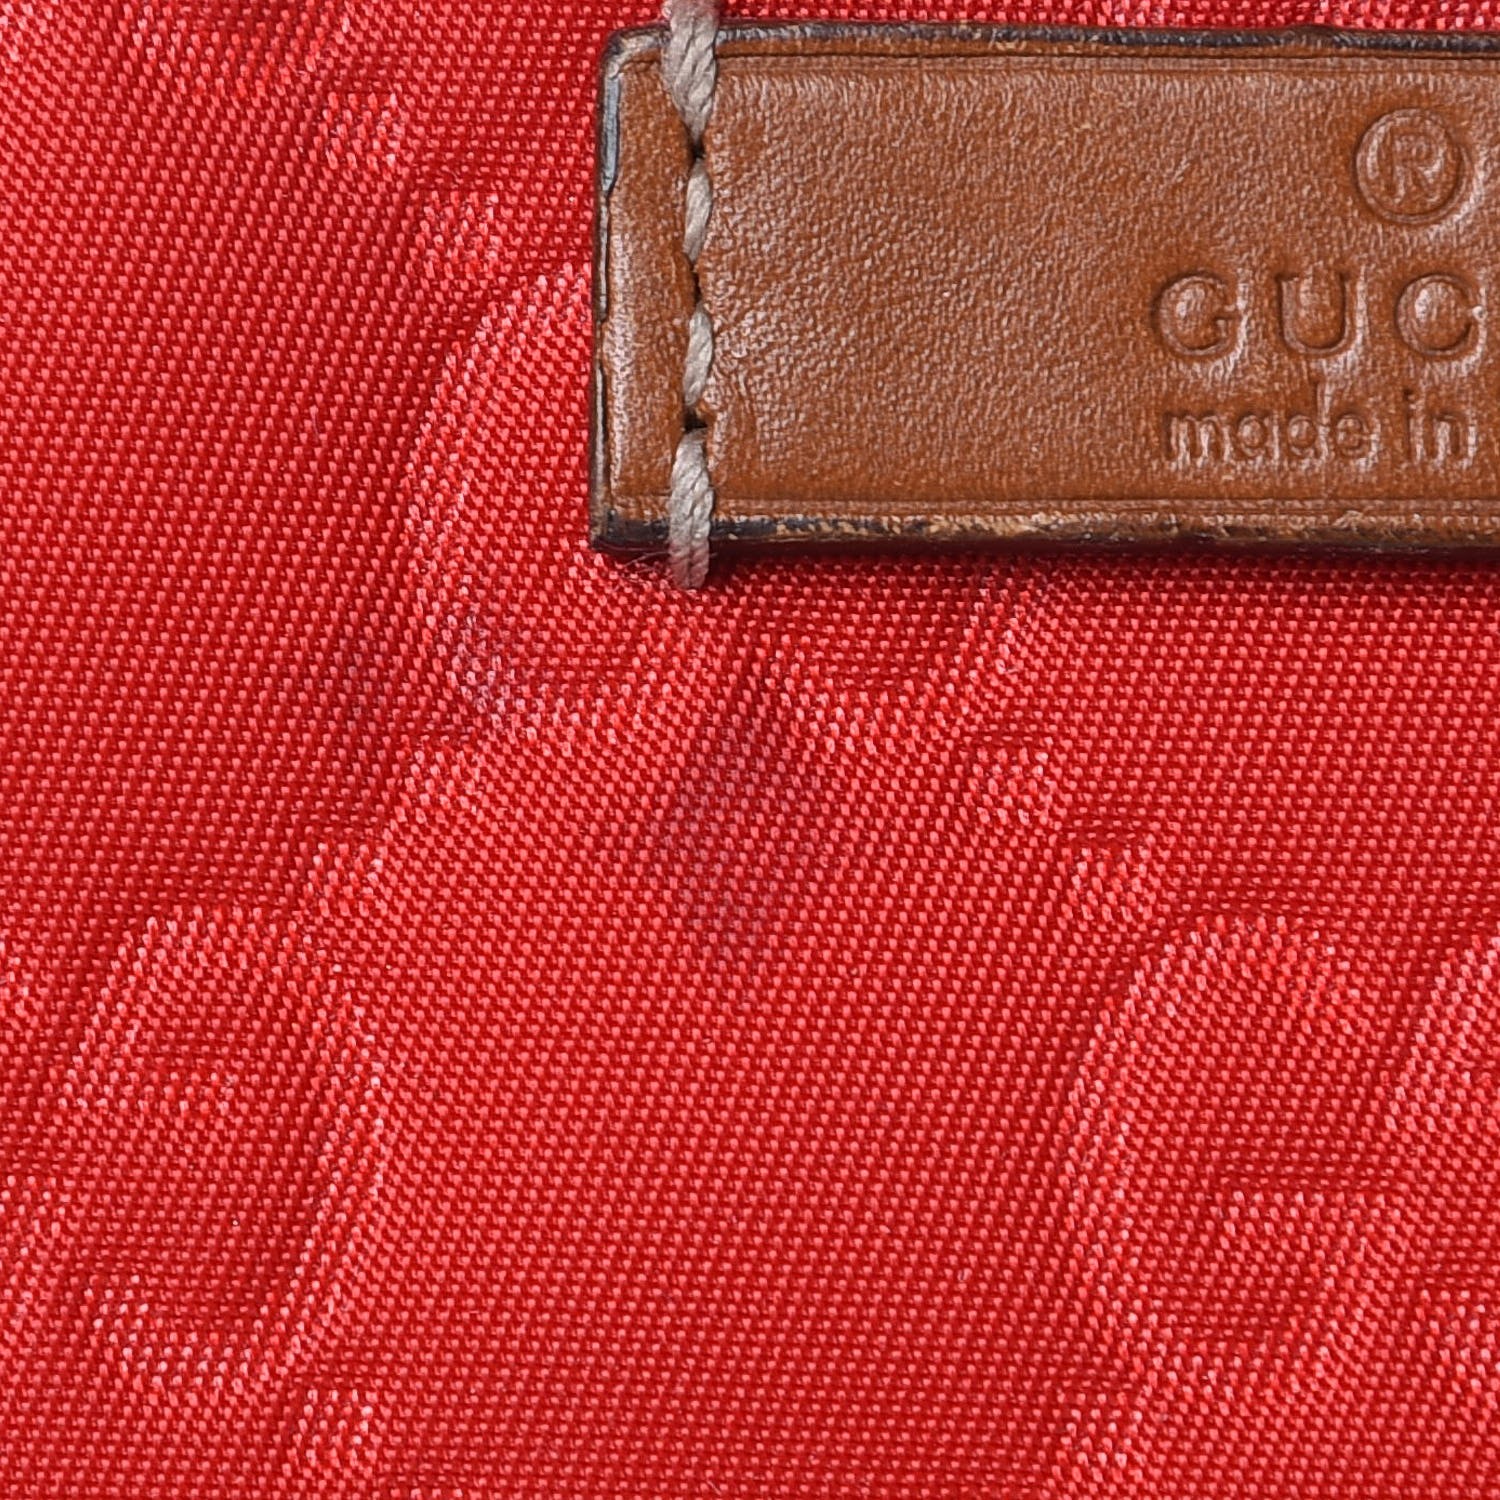 GUCCI Nylon Guccissima Zip Top Pouch Red 297085